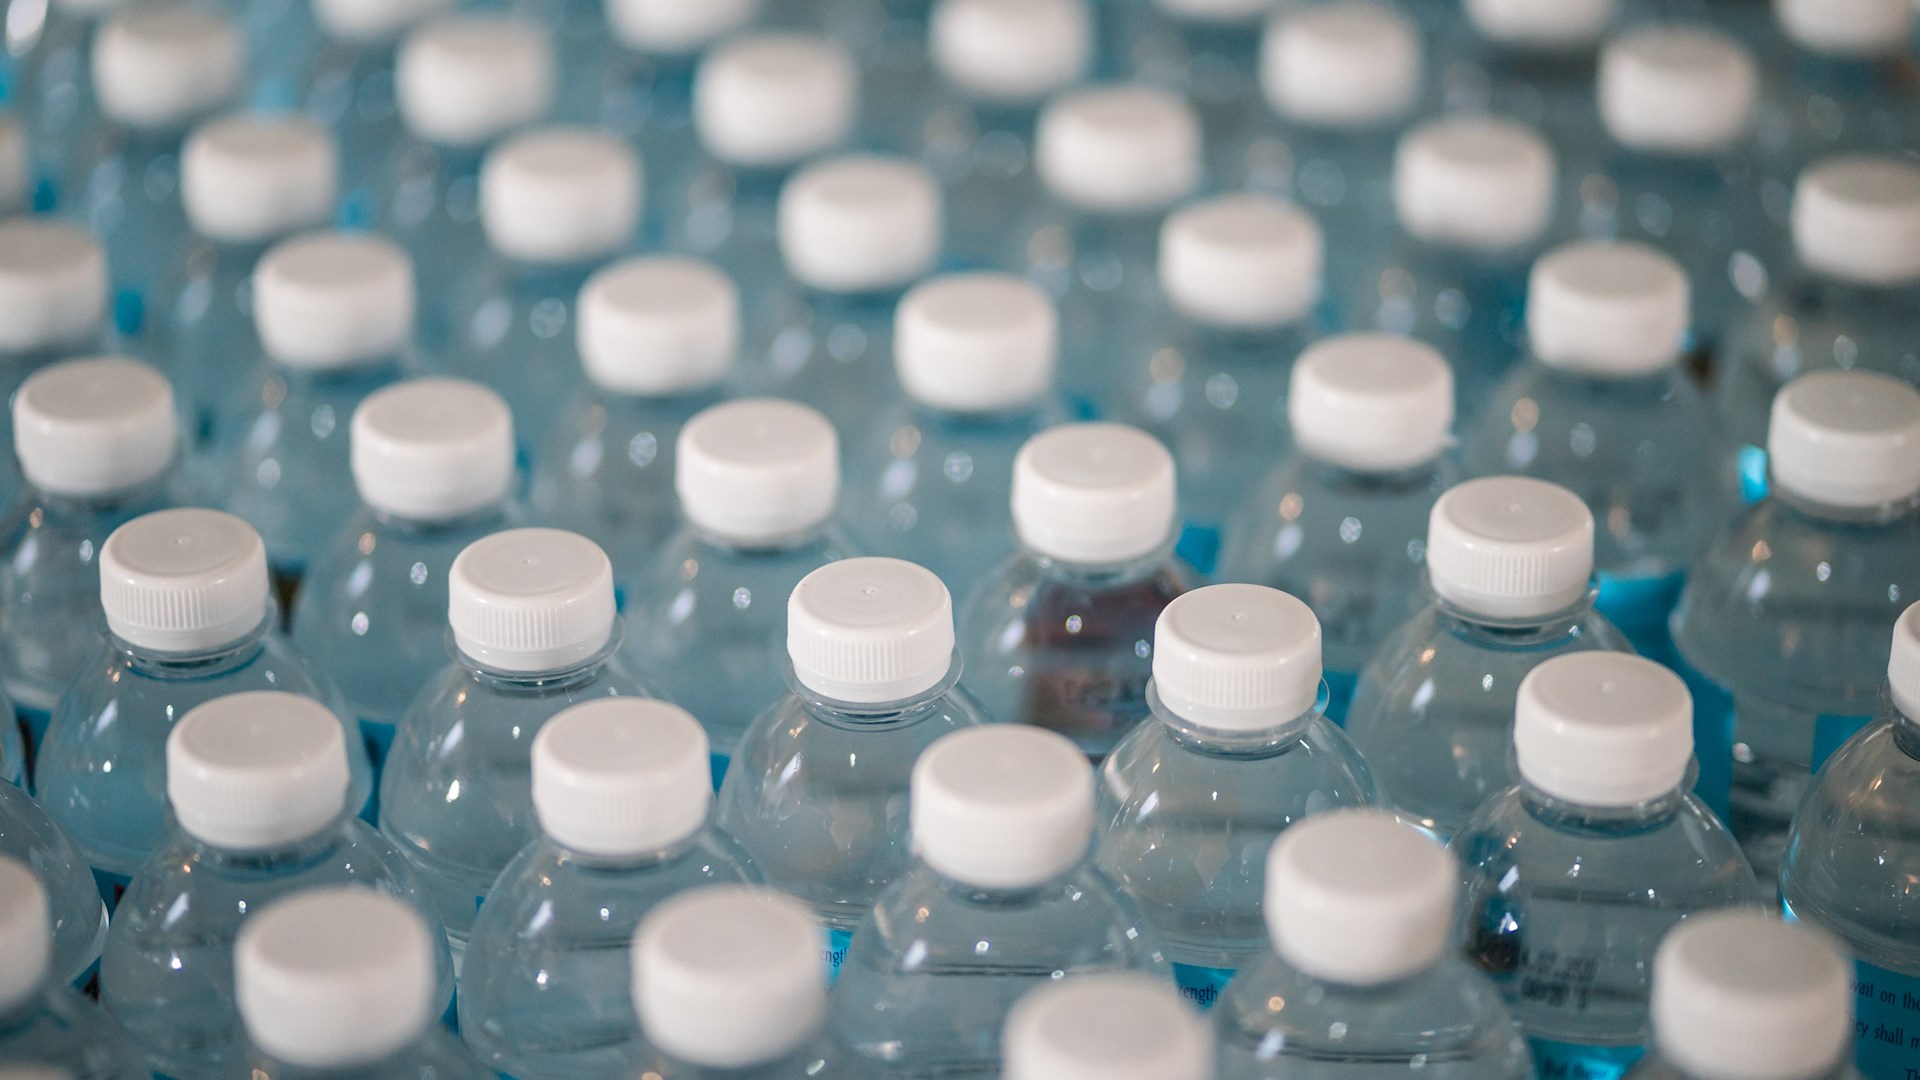 Regulamentação do sistema de depósito de embalagens de bebidas em plástico, vidro, metais ferrosos e alumínio